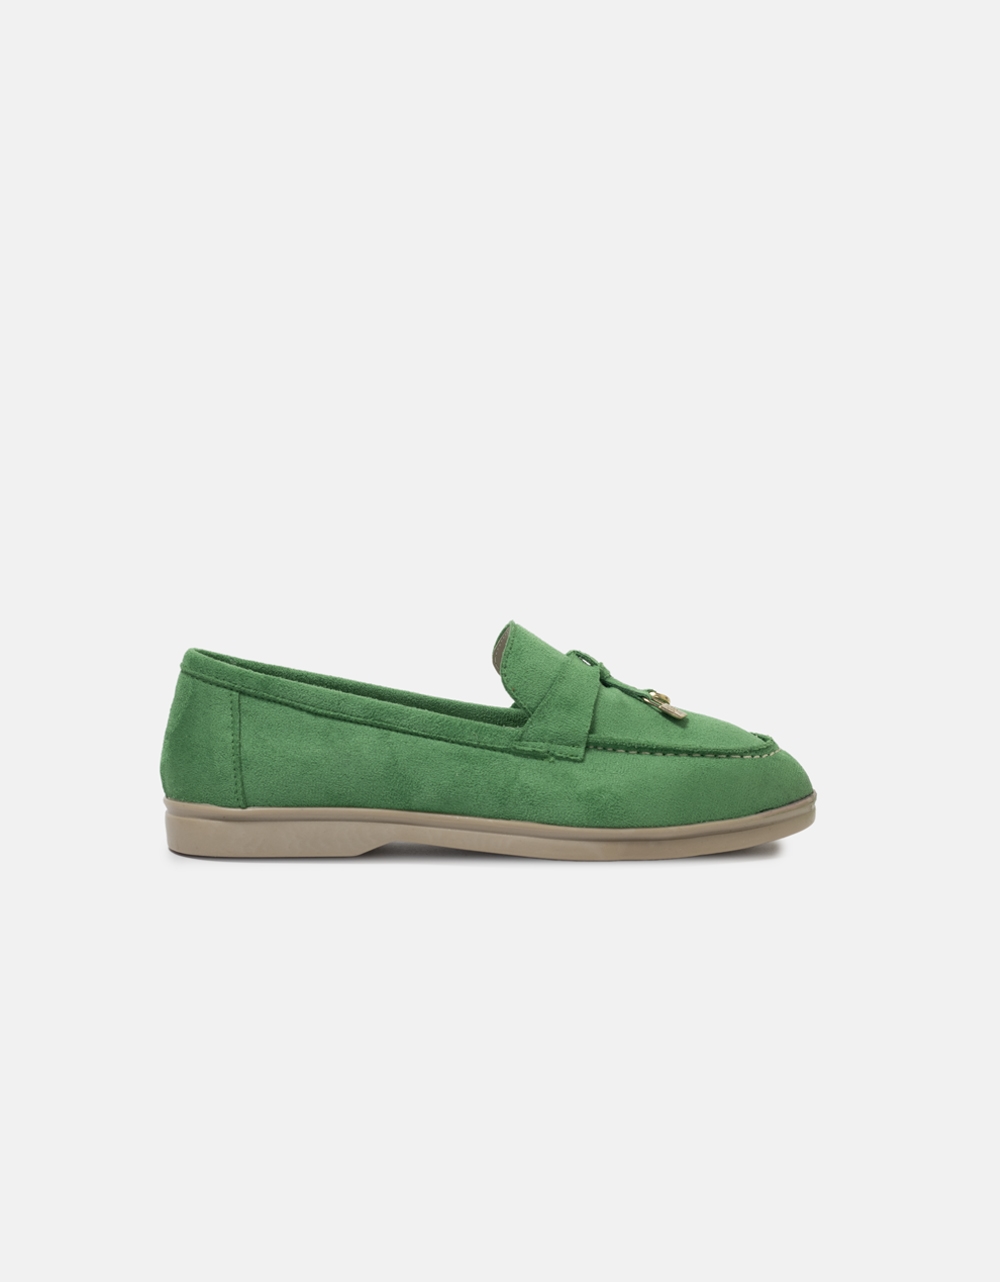 Εικόνα από Flat loafers με διακοσμητικά στοιχεία Πράσινο